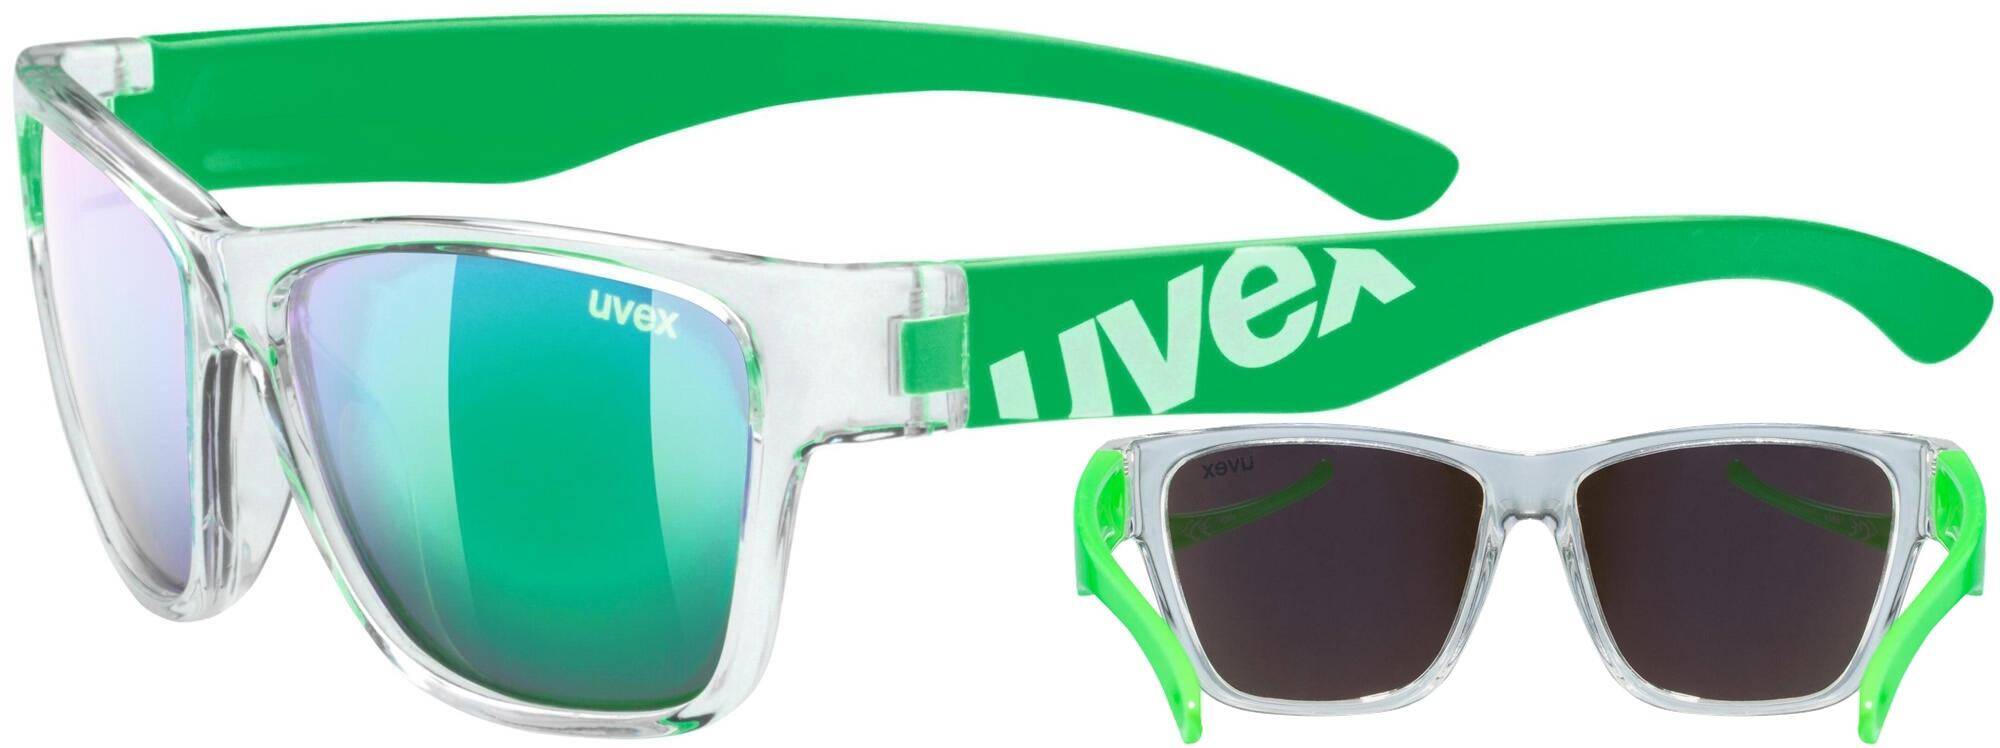 Okulary Uvex Sportstyle 508 zielone junior dziecięce